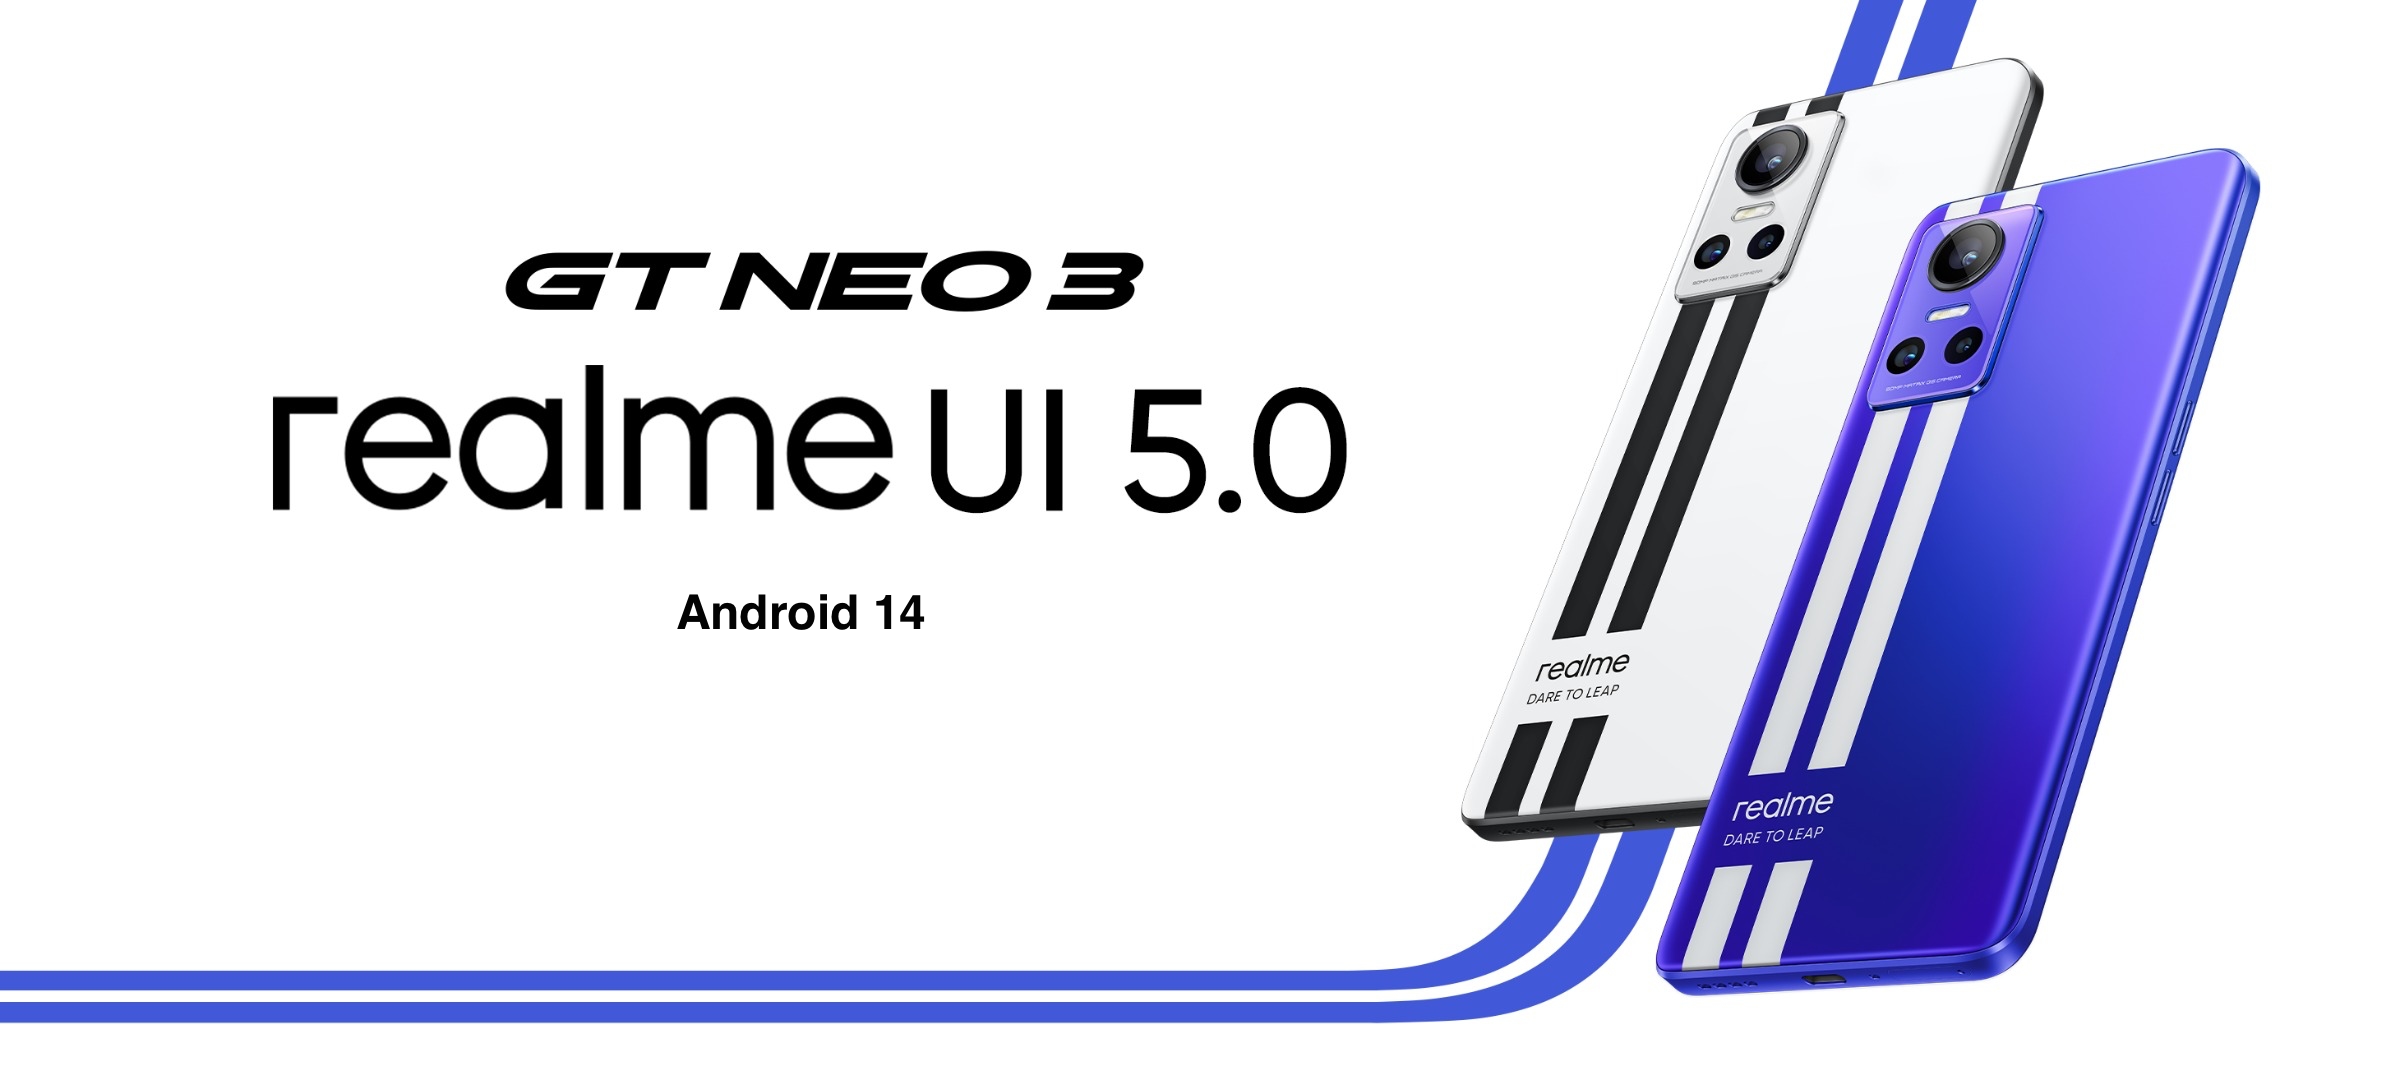 realme GT Neo 3 har fått betaversionen av realme UI 5.0 med Android 14 ombord